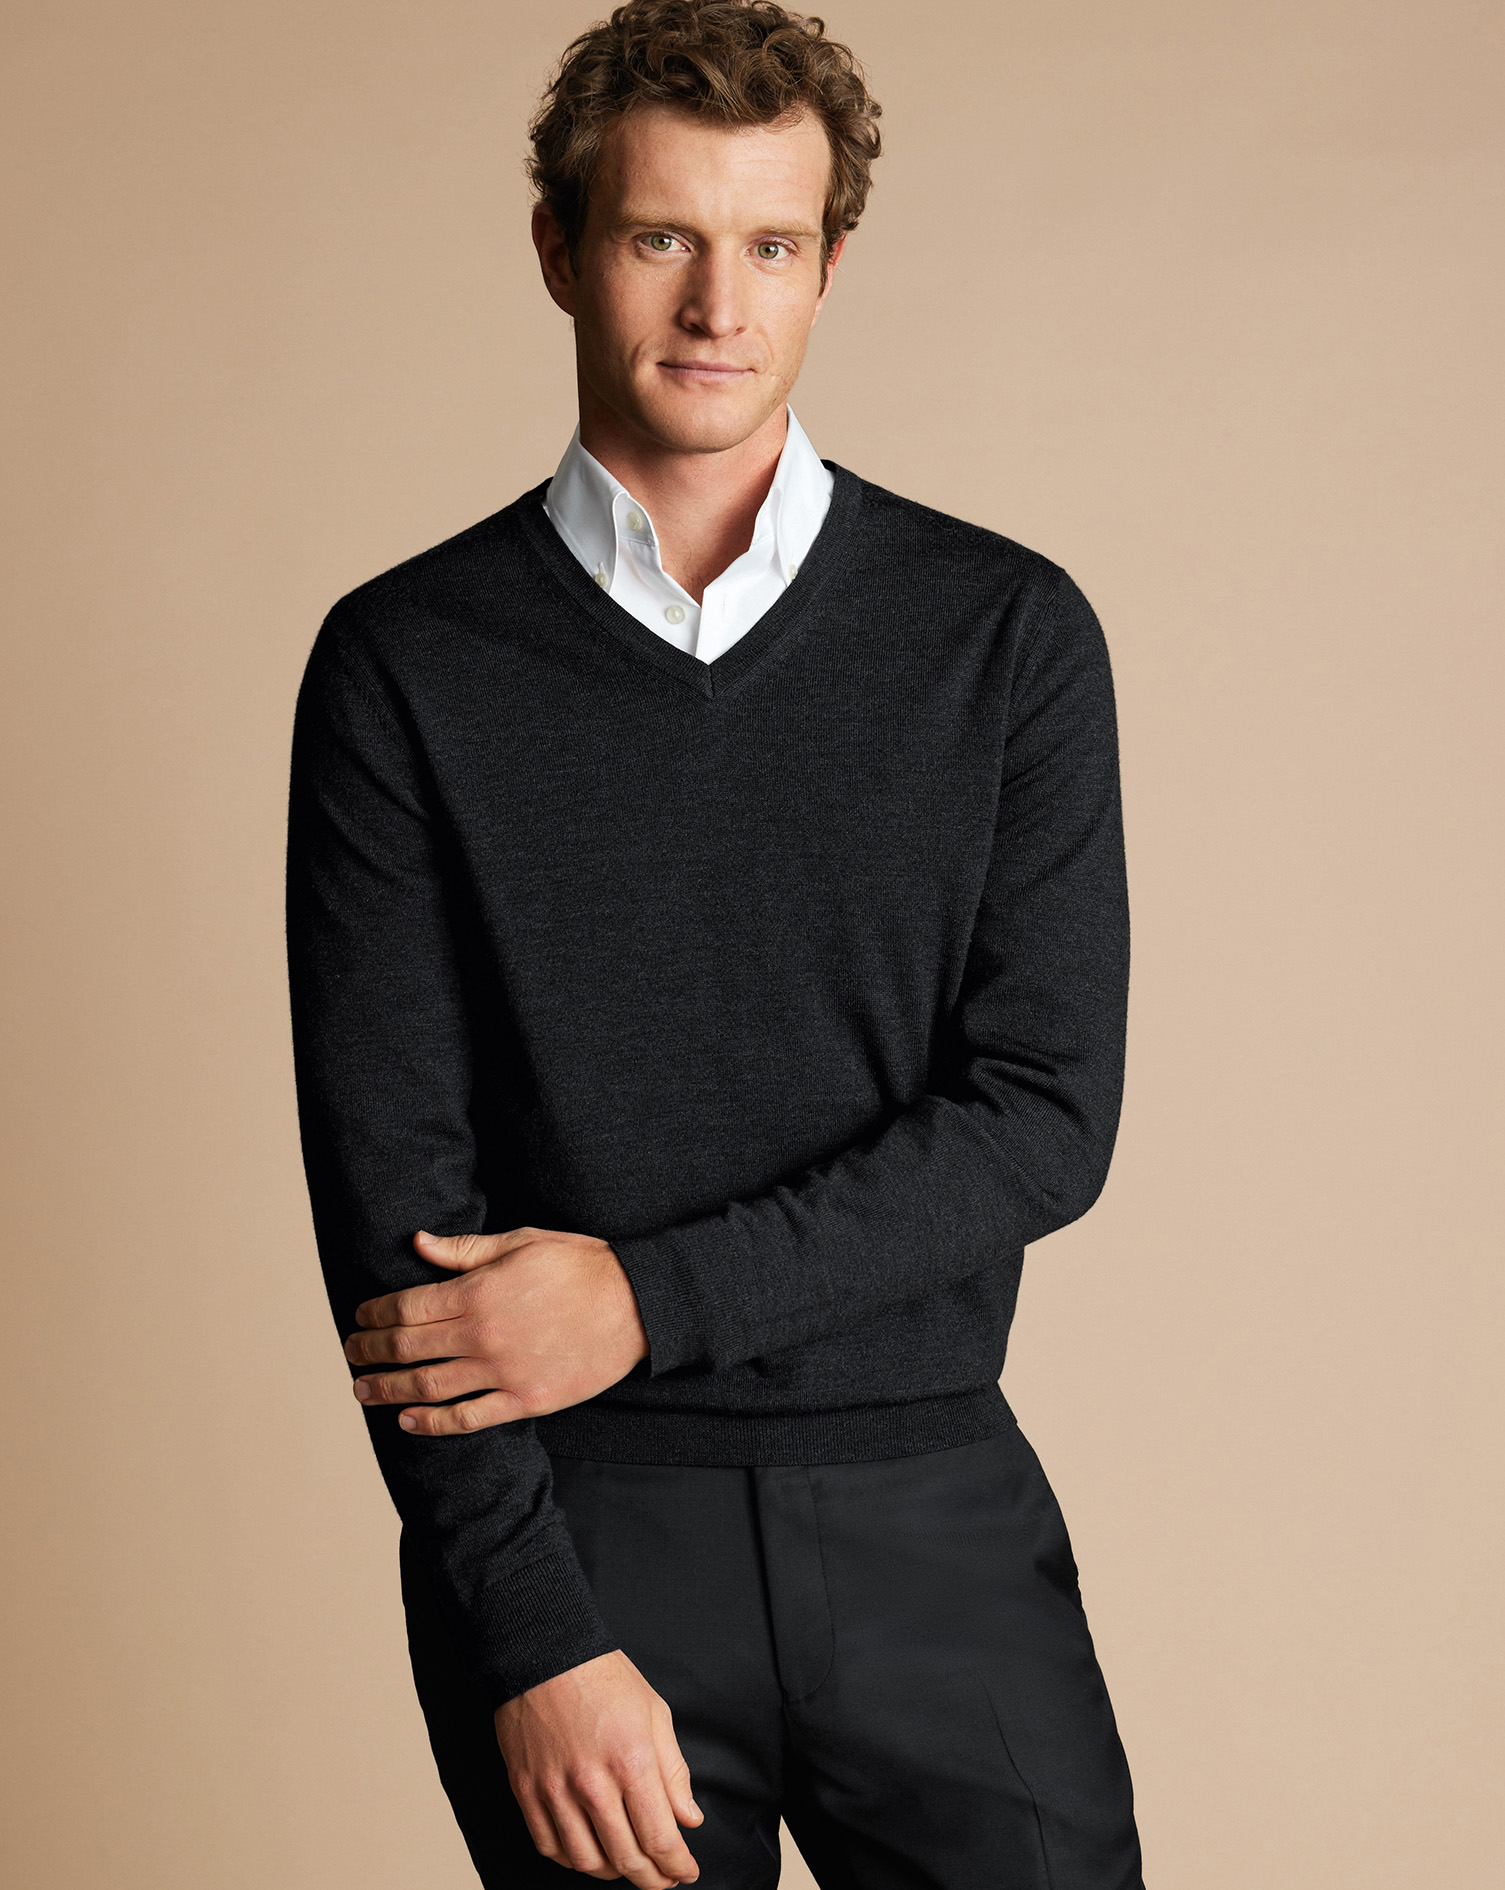 Men's Charles Tyrwhitt V-Neck Sweater - Charcoal Grey Size Small Merino
